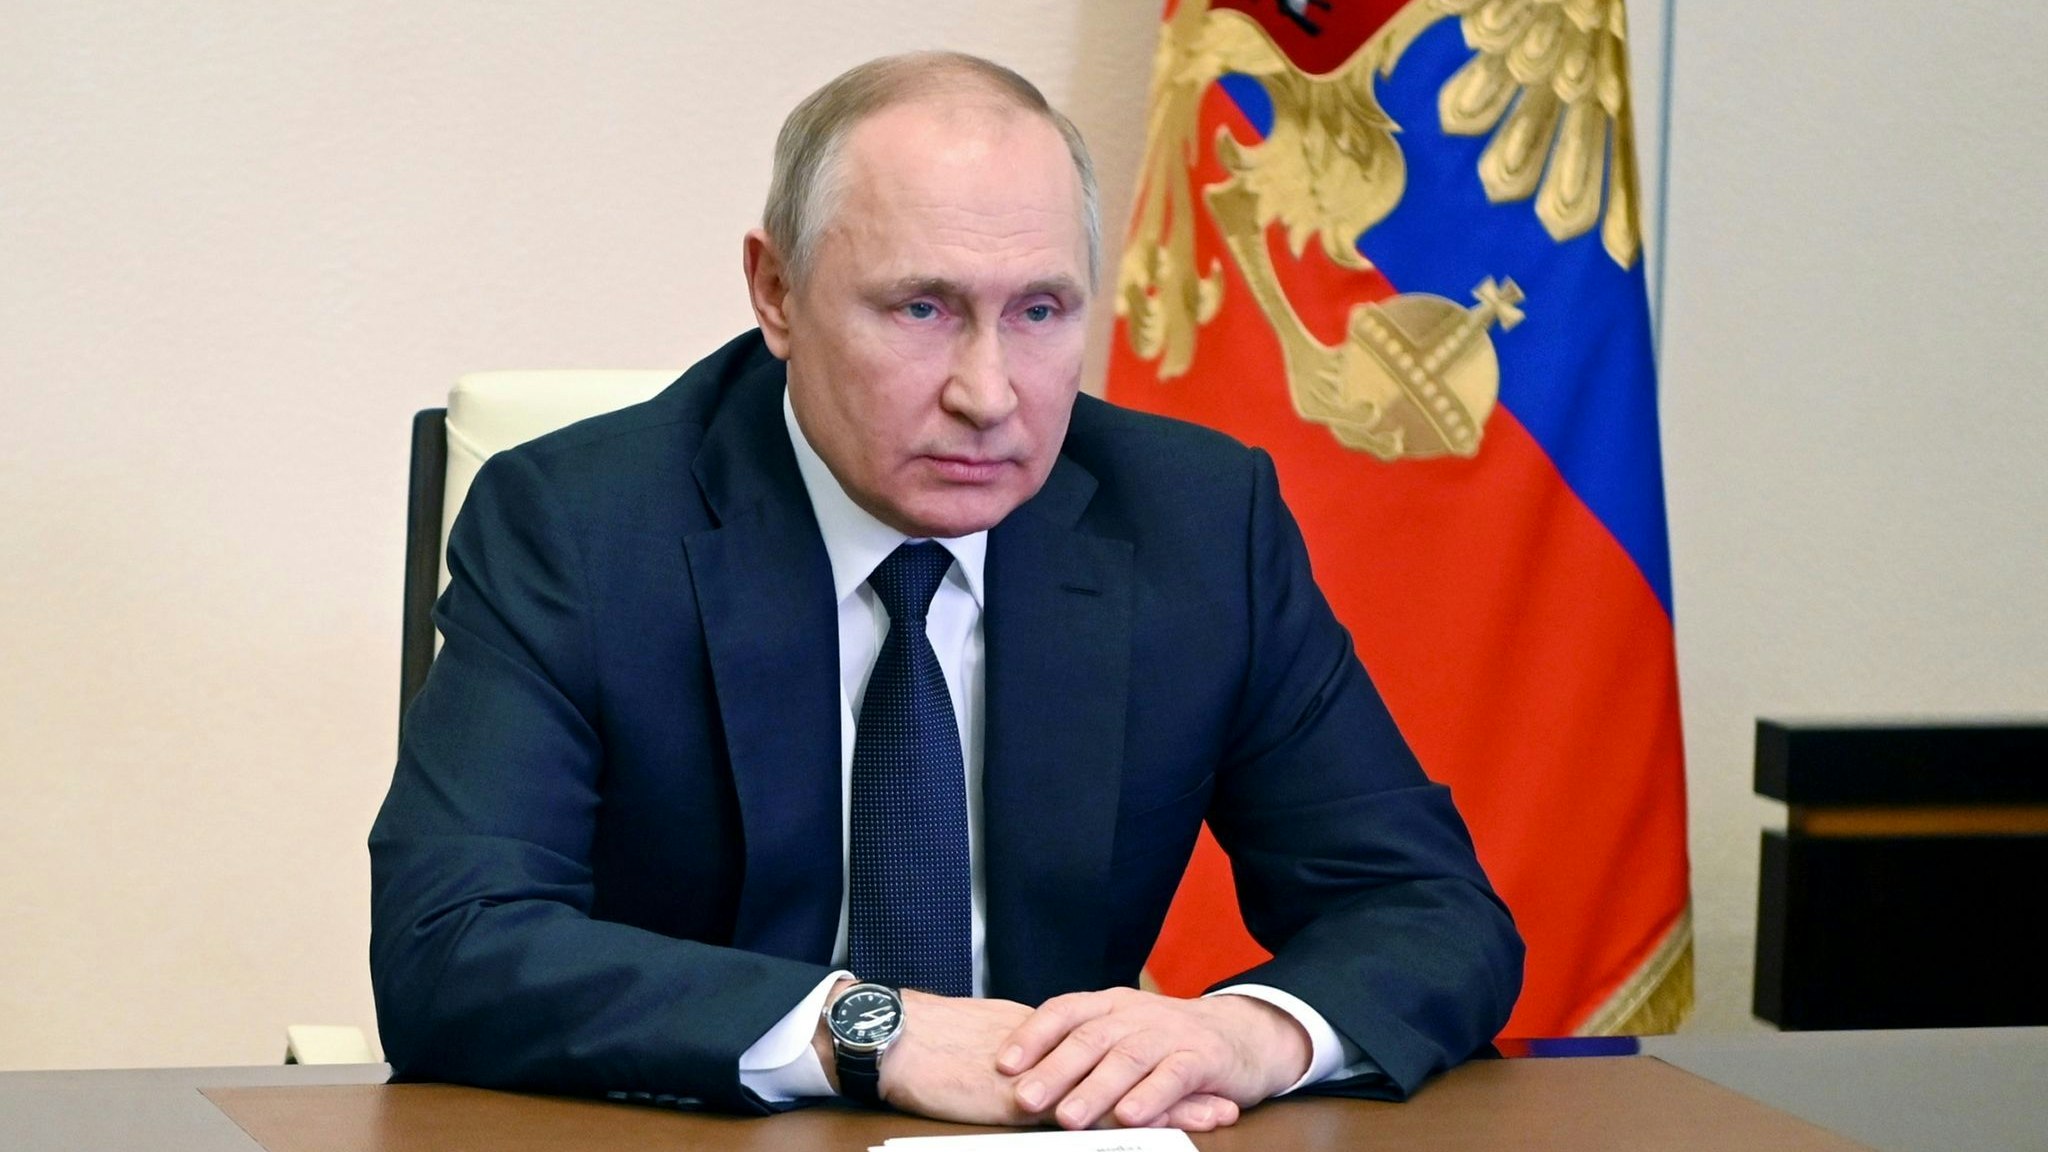 Wladimir Putin: Die wichtigste Forderung ist die Entmilitarisierung der Ukraine. Foto: dpa/Gorshkov